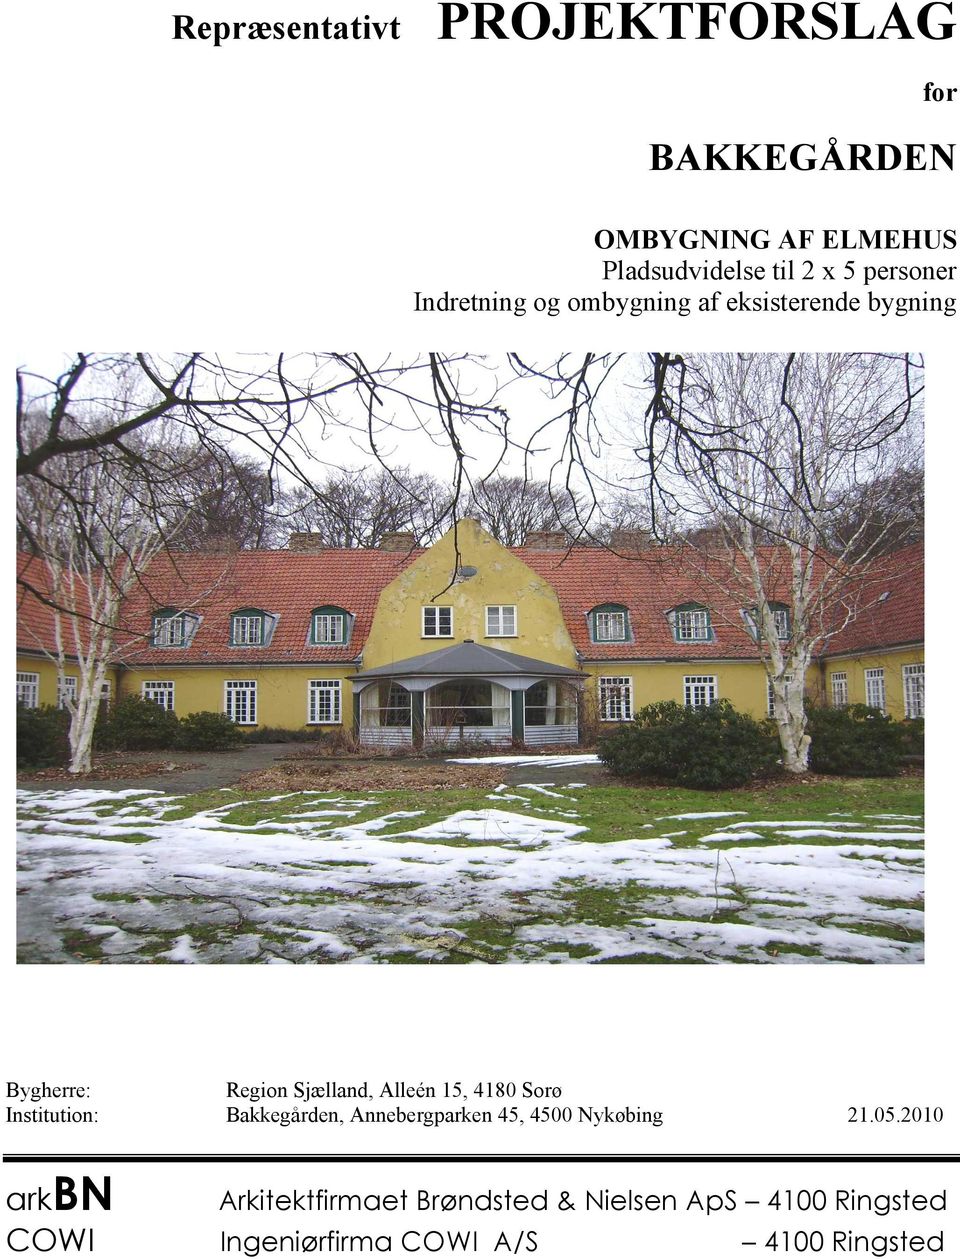 15, 4180 Sorø Institution: Bakkegården, Annebergparken 45, 4500 Nykøbing 21.05.